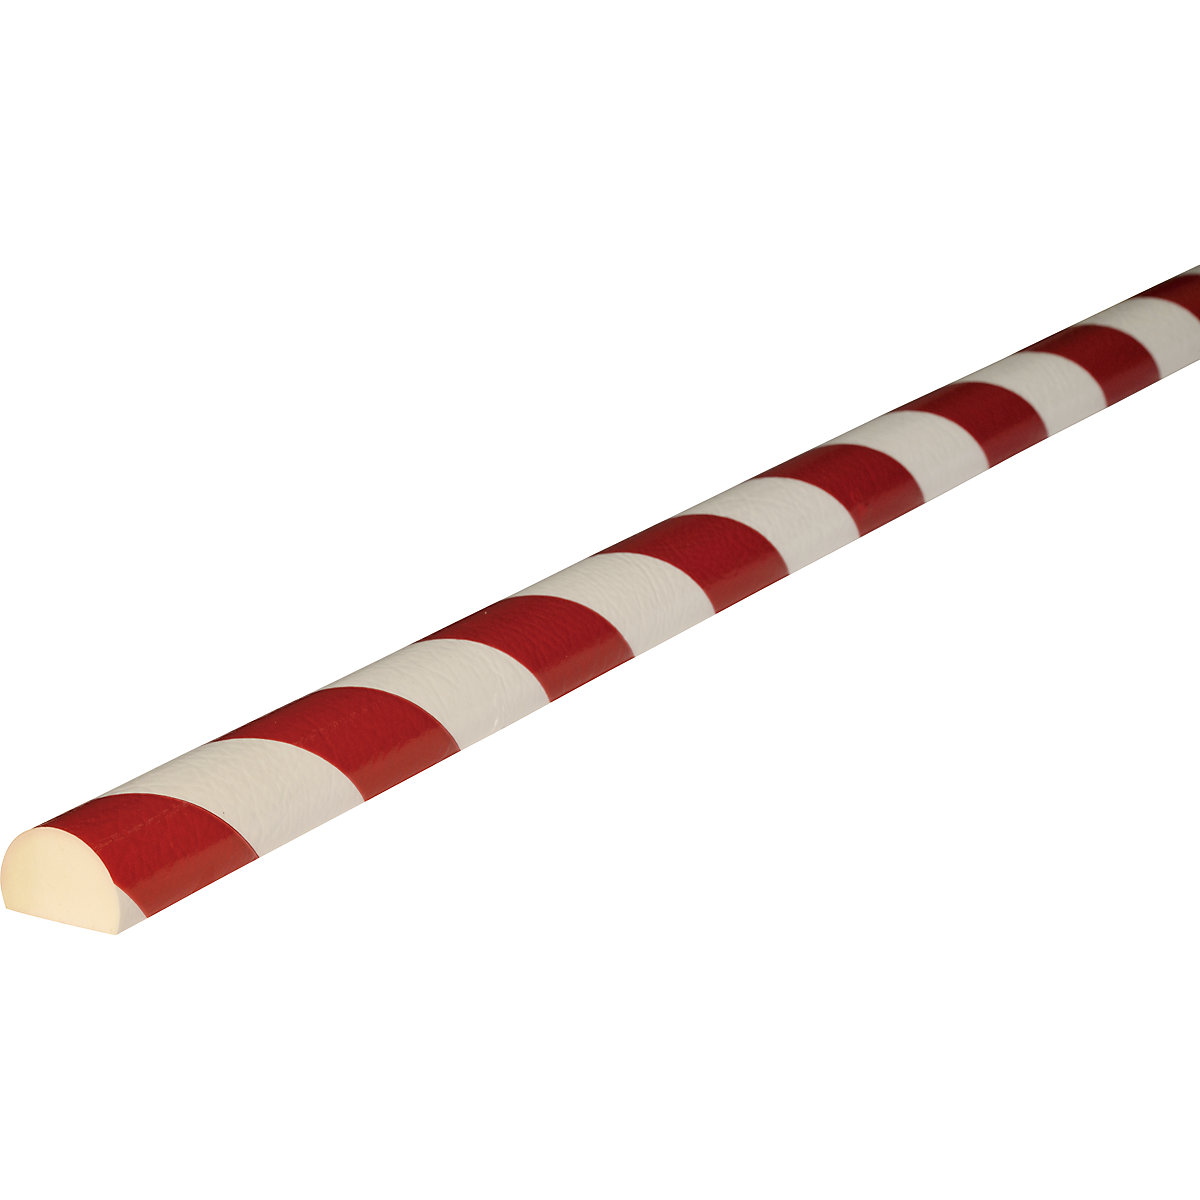 Knuffi®-oppervlaktebescherming – SHG, type C, stuk van 1 m, rood/wit-19